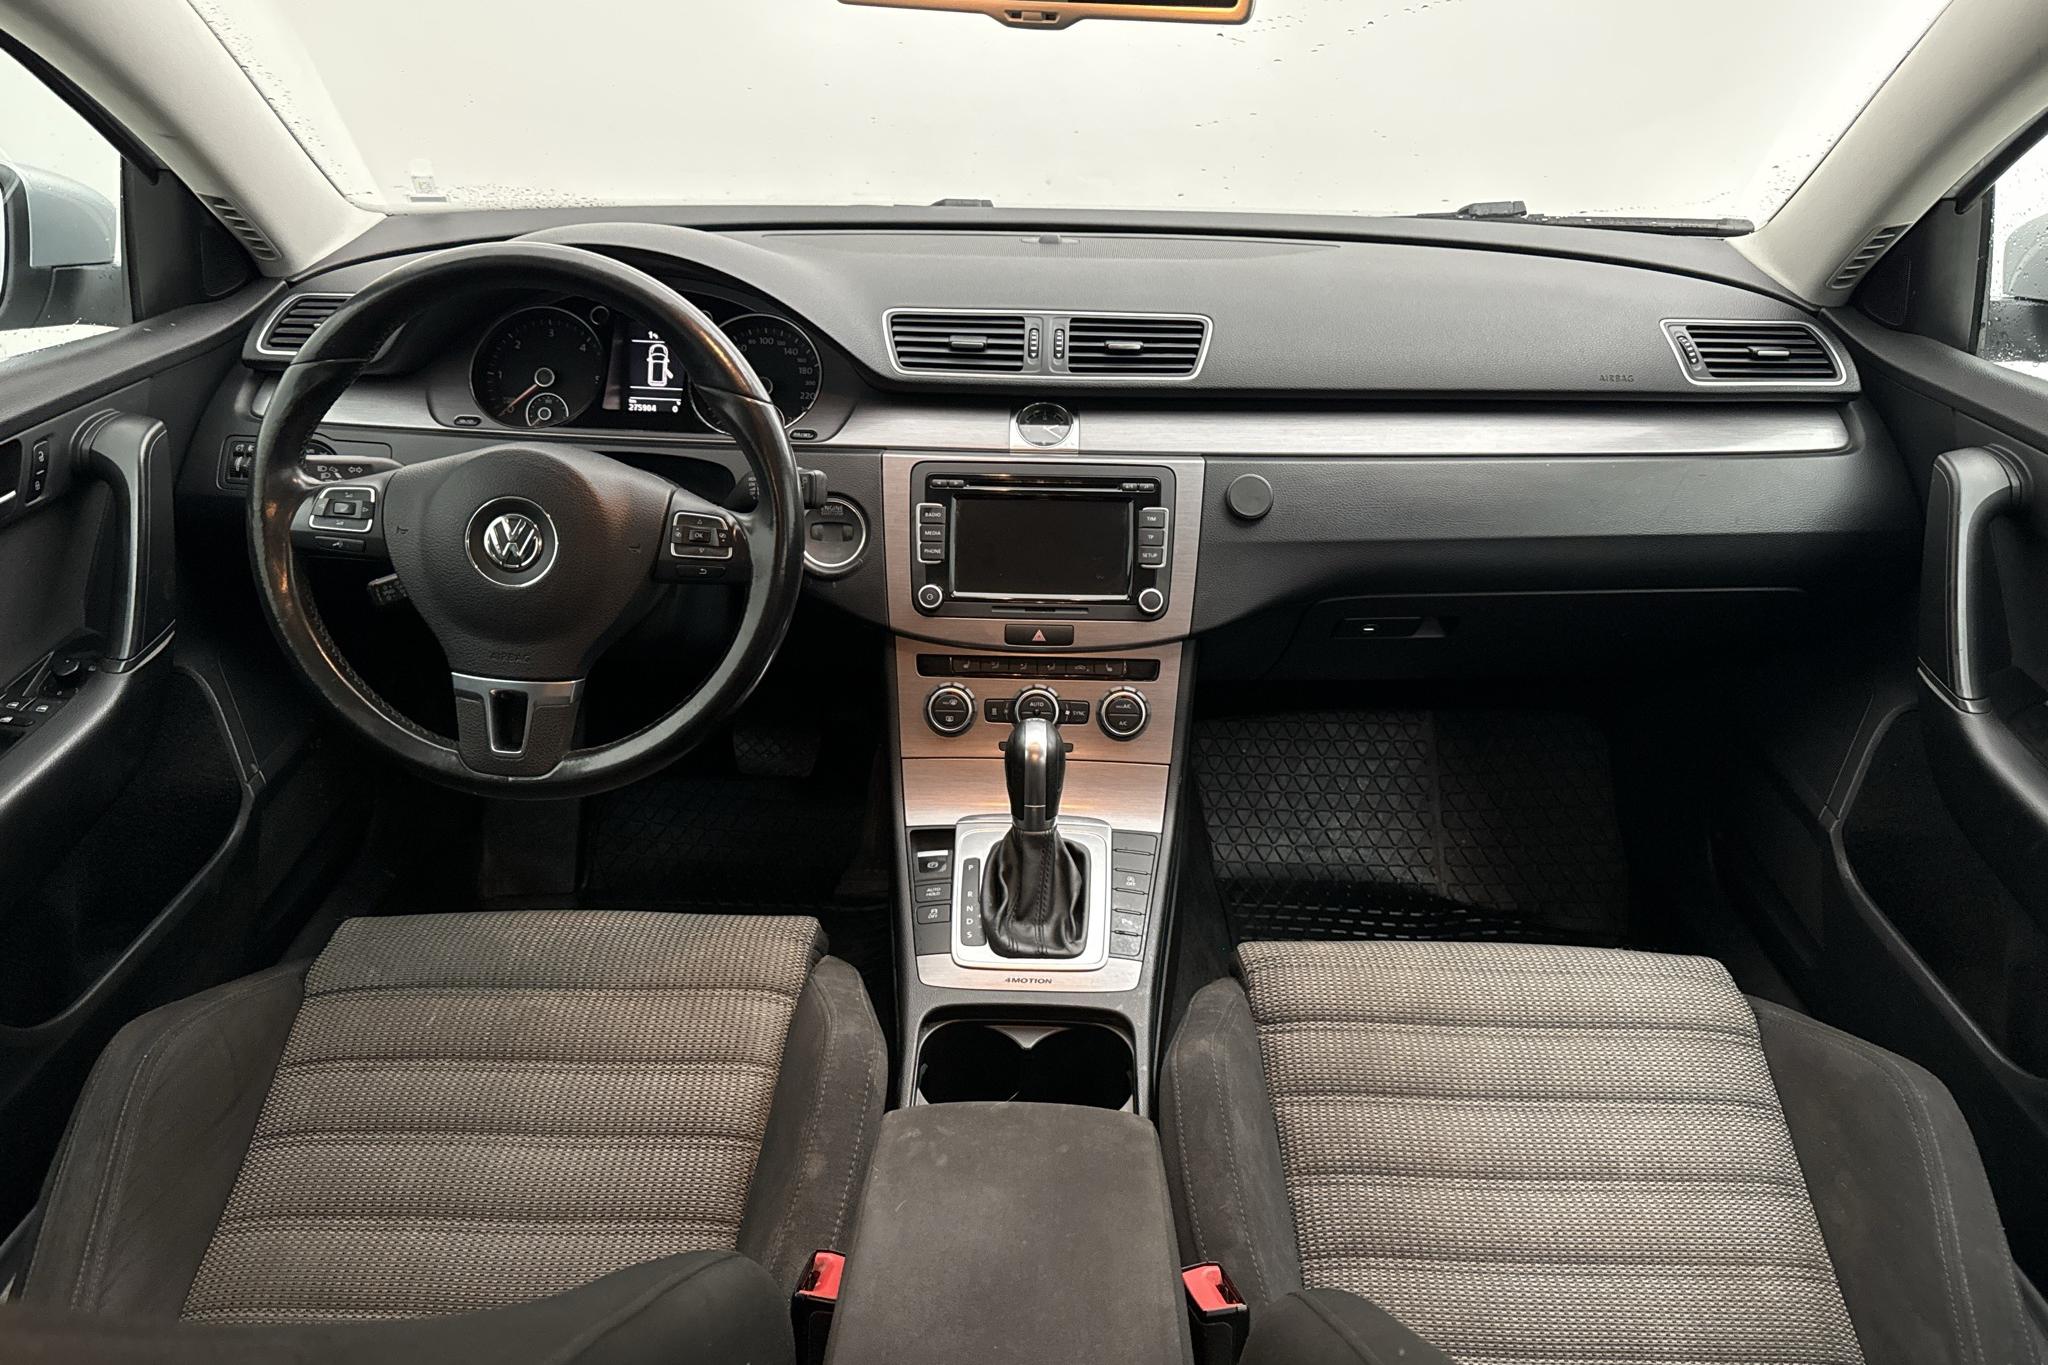 VW Passat 2.0 TDI BlueMotion Technology Variant 4Motion (177hk) - 275 910 km - Automatyczna - srebro - 2015